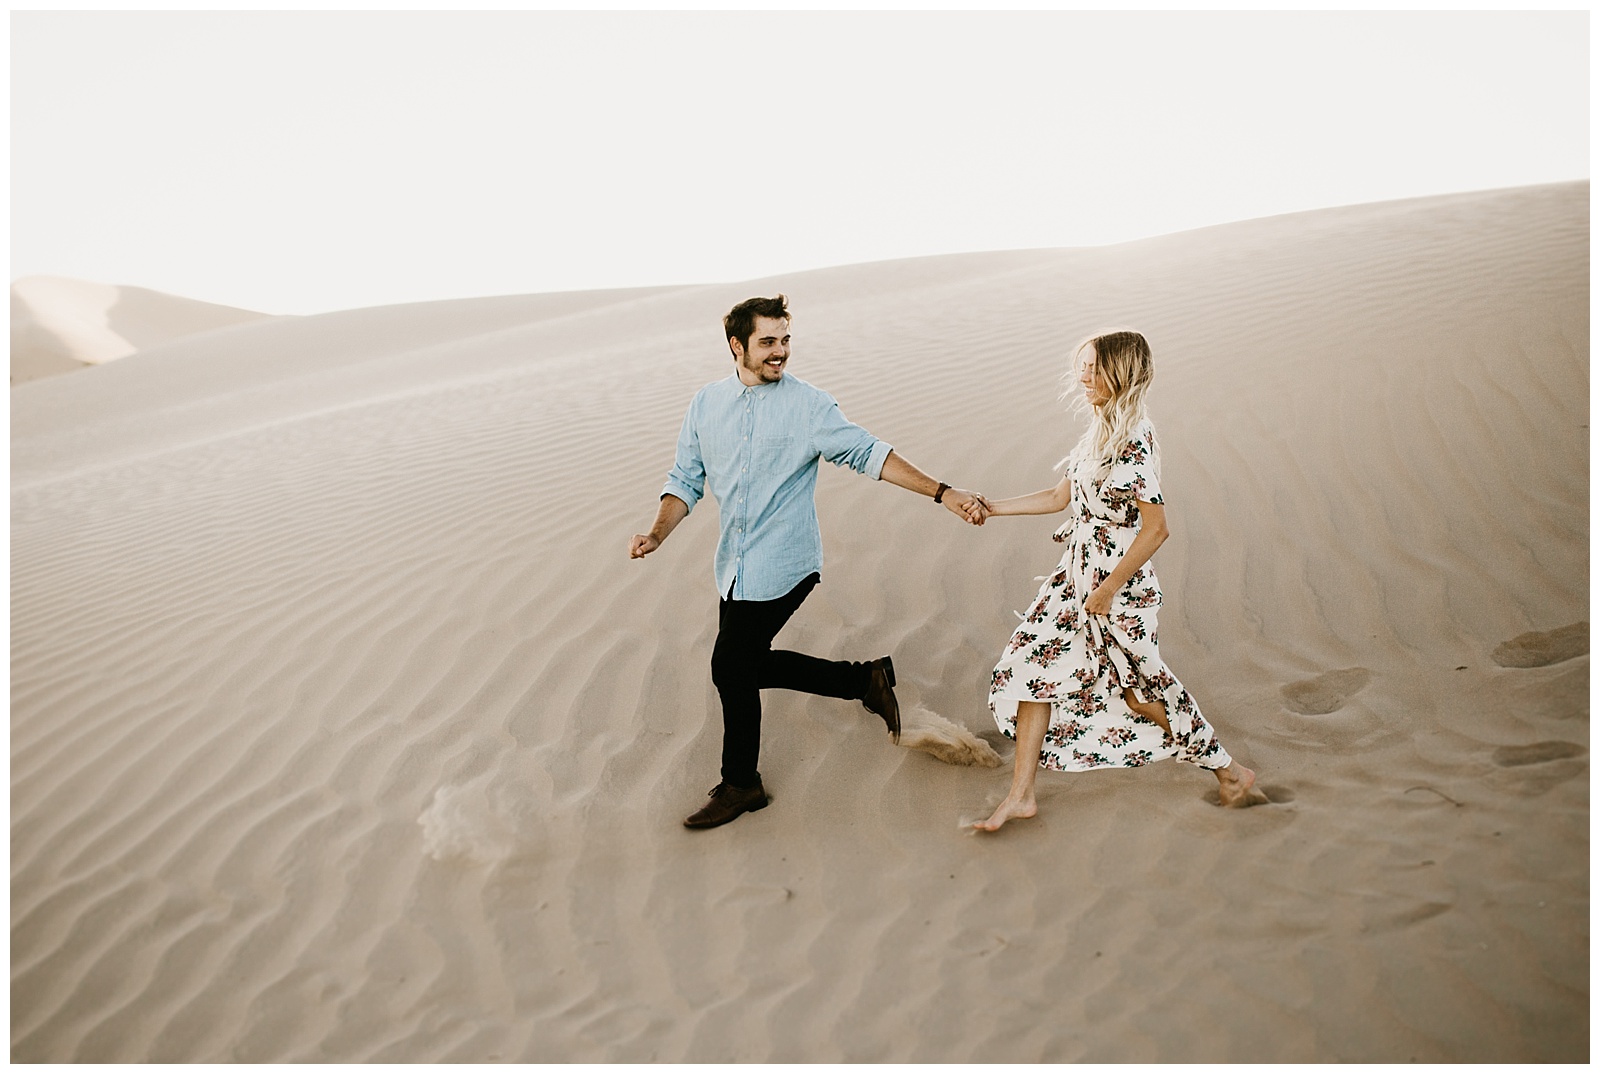 Elise and Kade, Desert Sand Dune Engagements | Nicole Aston Photo